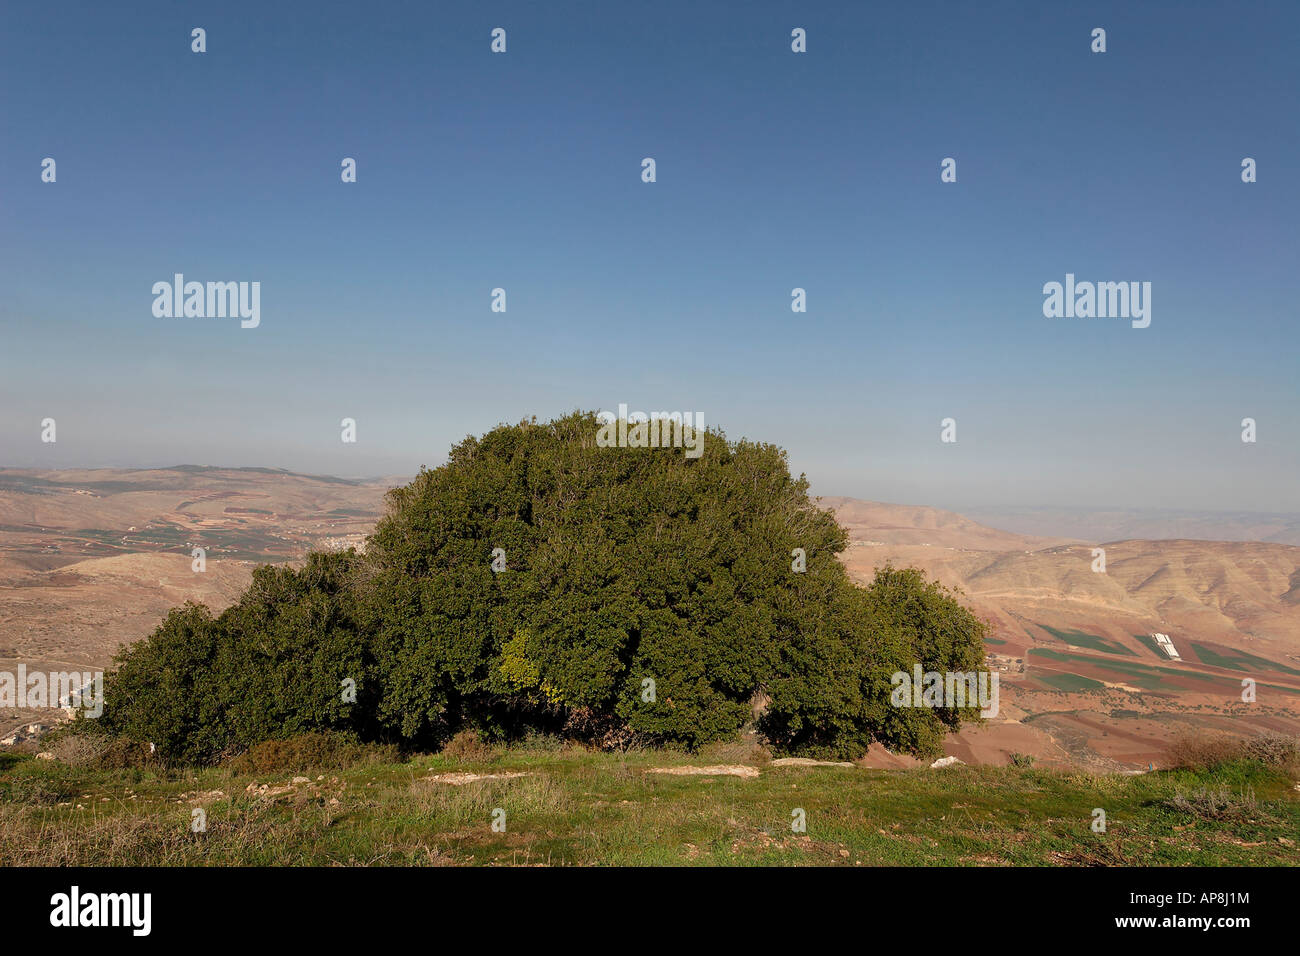 Samarie chêne kermès Quercus Caliprinos sur le mont Kabir Banque D'Images